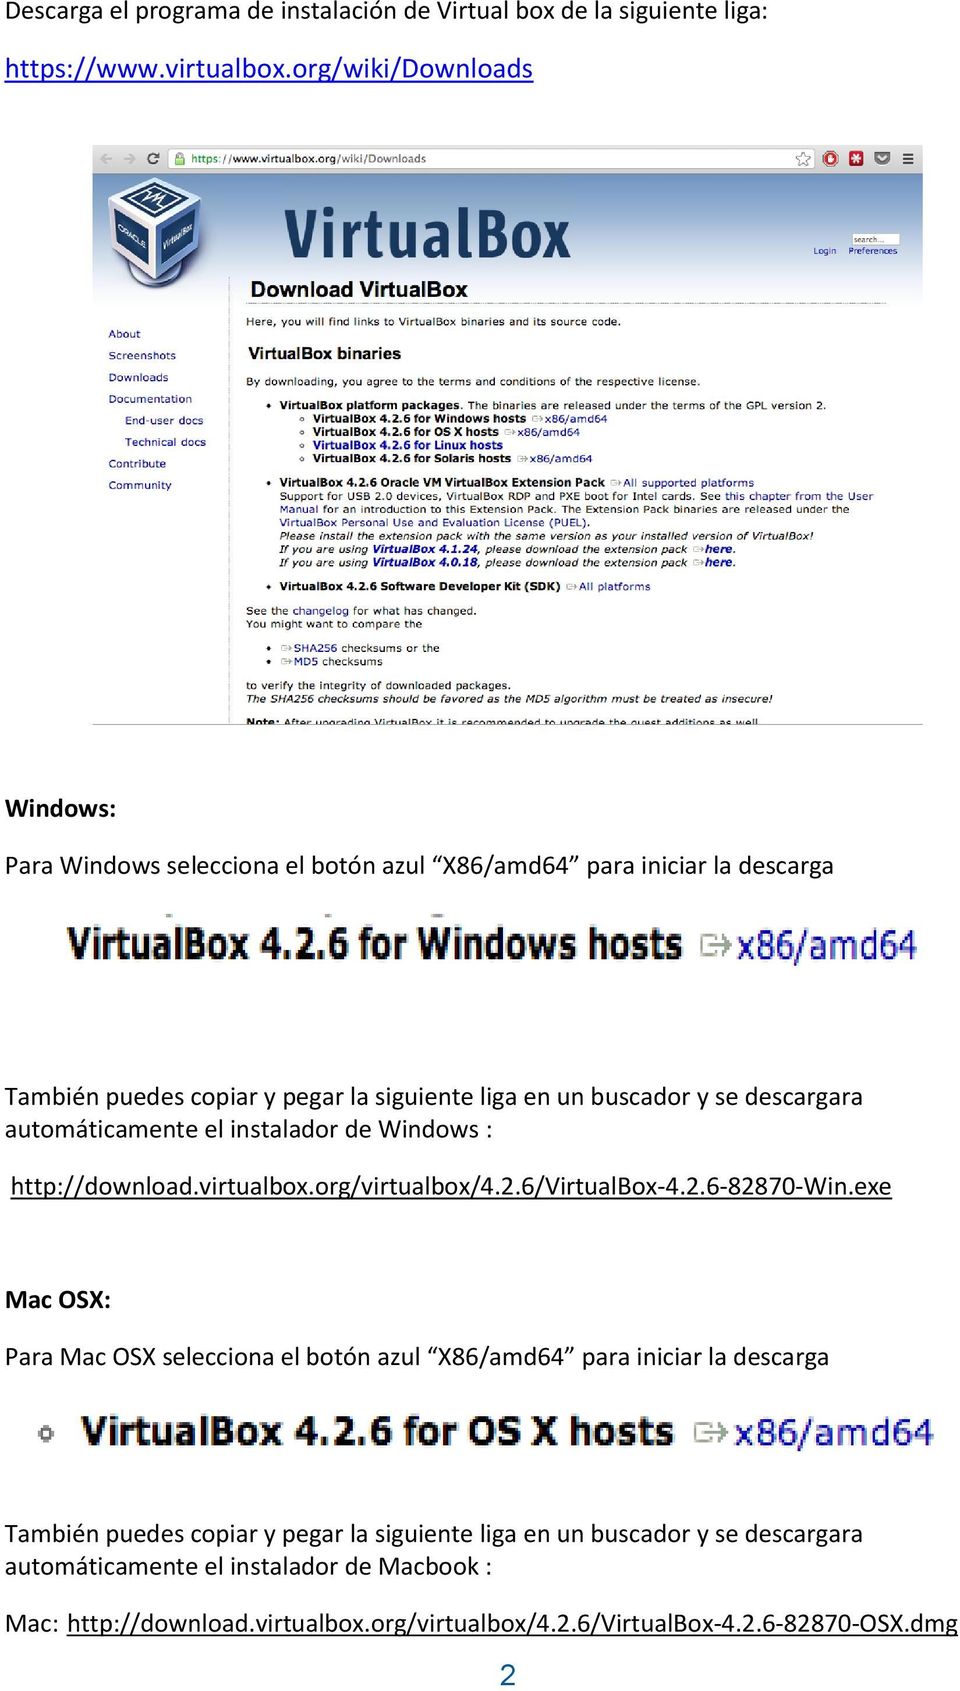 descargara automáticamente el instalador de Windows : http://download.virtualbox.org/virtualbox/4.2.6/virtualbox-4.2.6-82870-win.